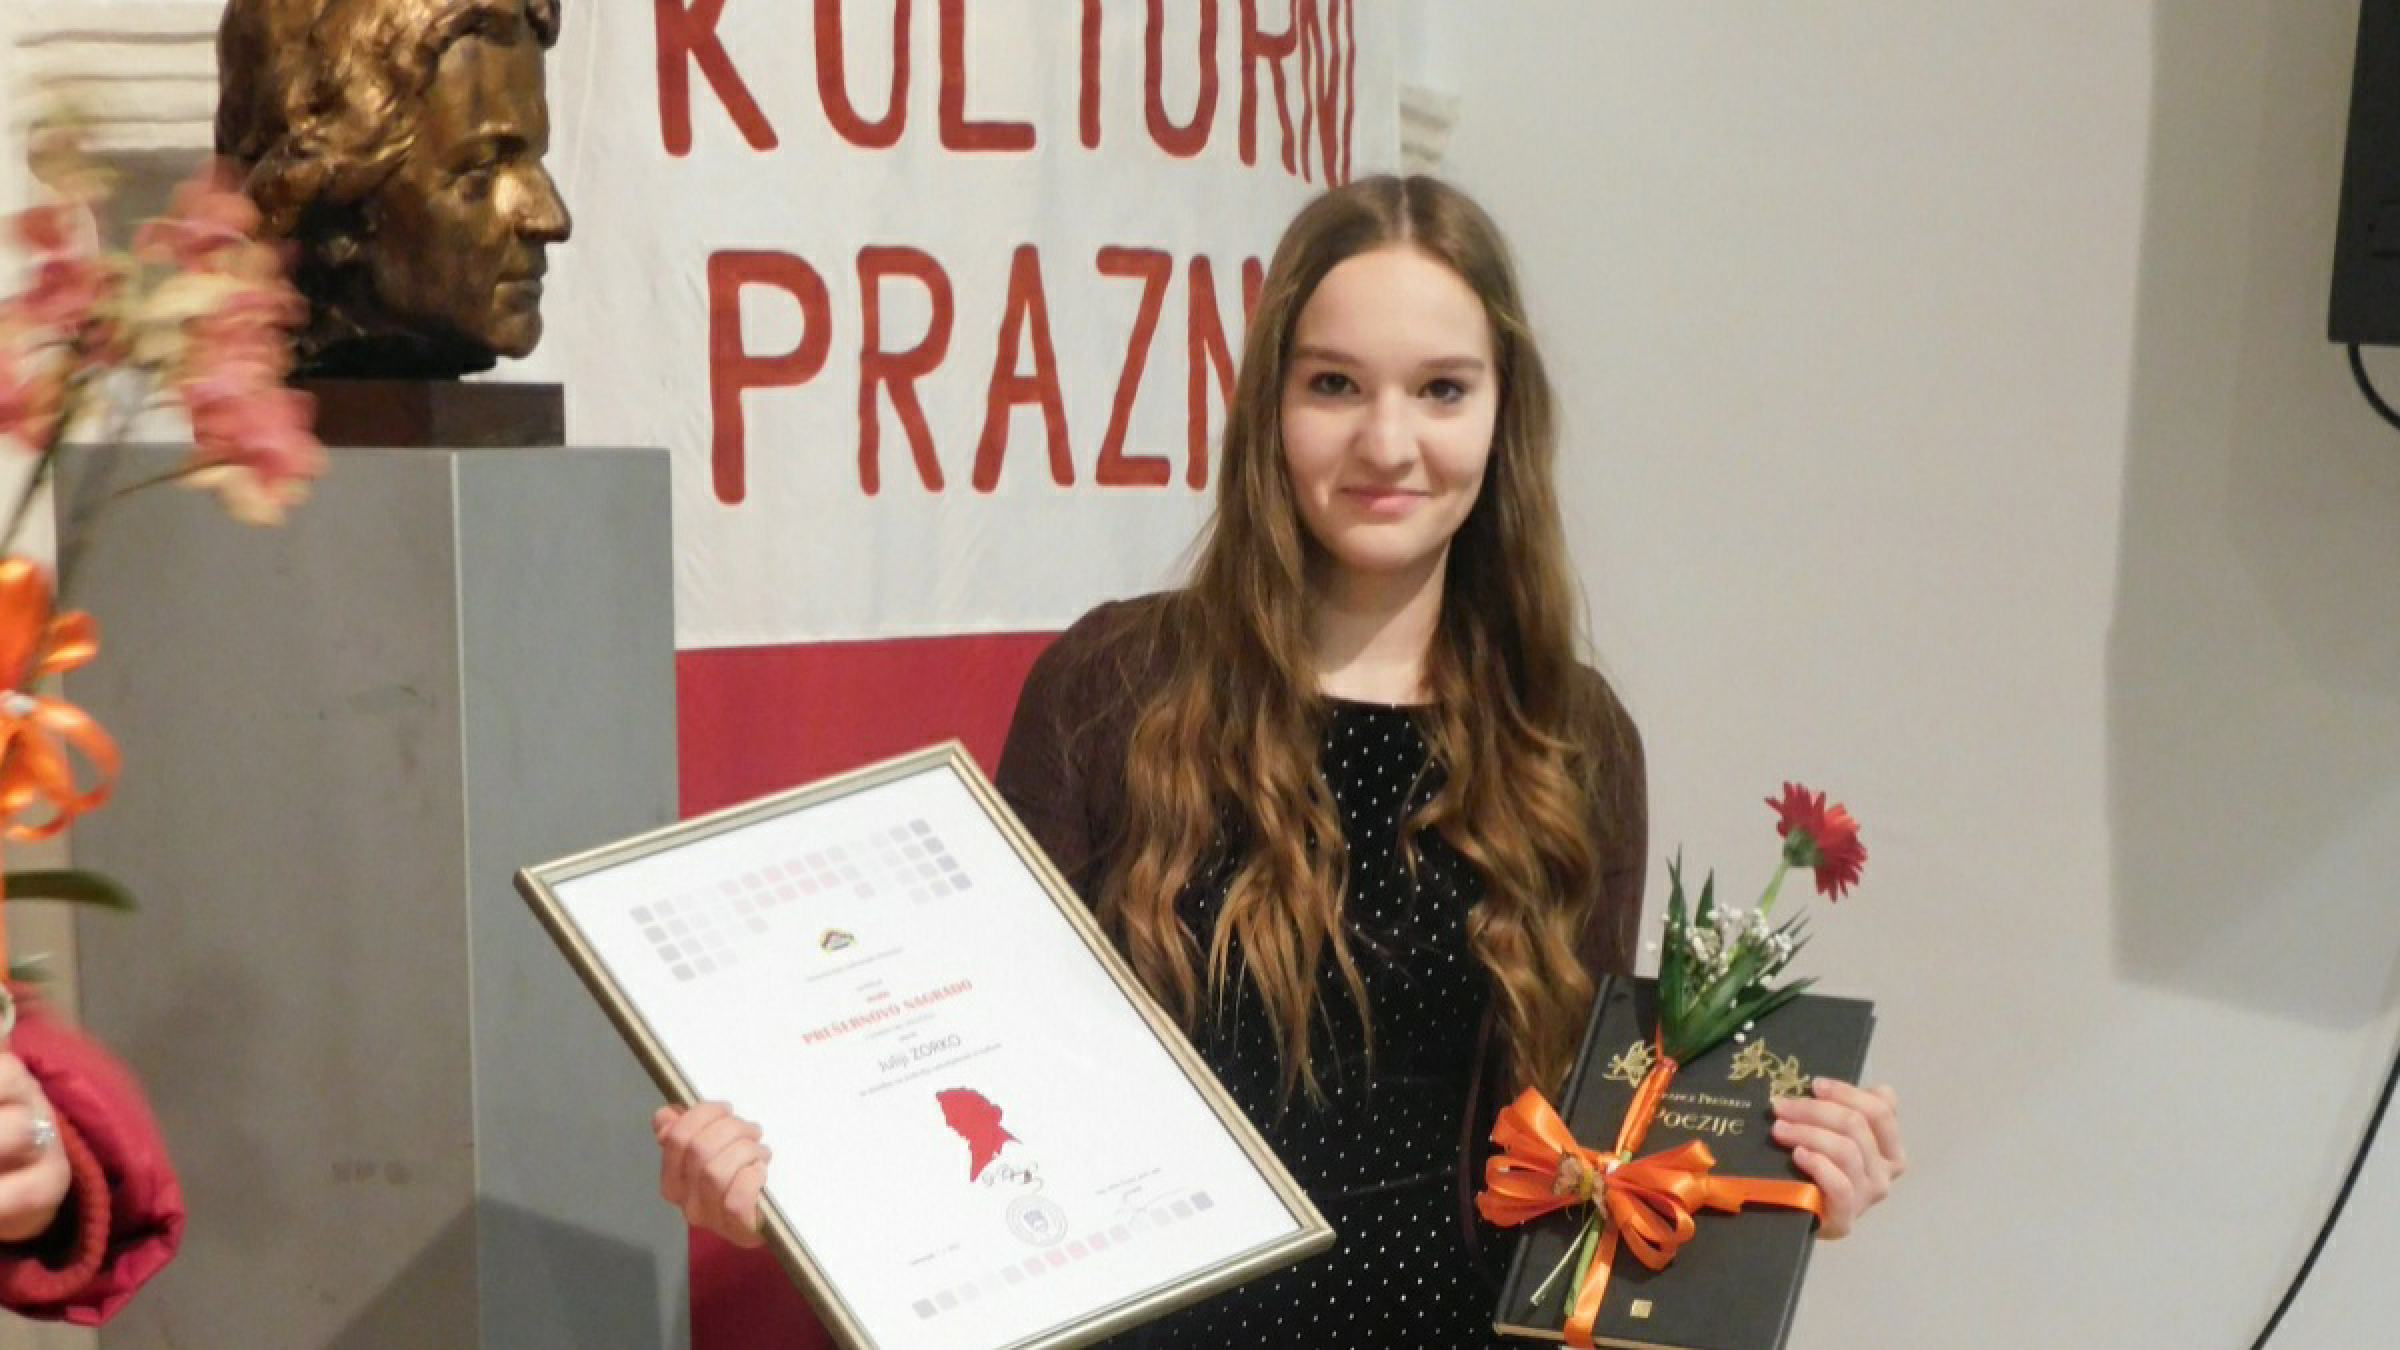 FOTO: Mala Prešernova nagrada tokrat v roke devetošolki Juliji Zorko